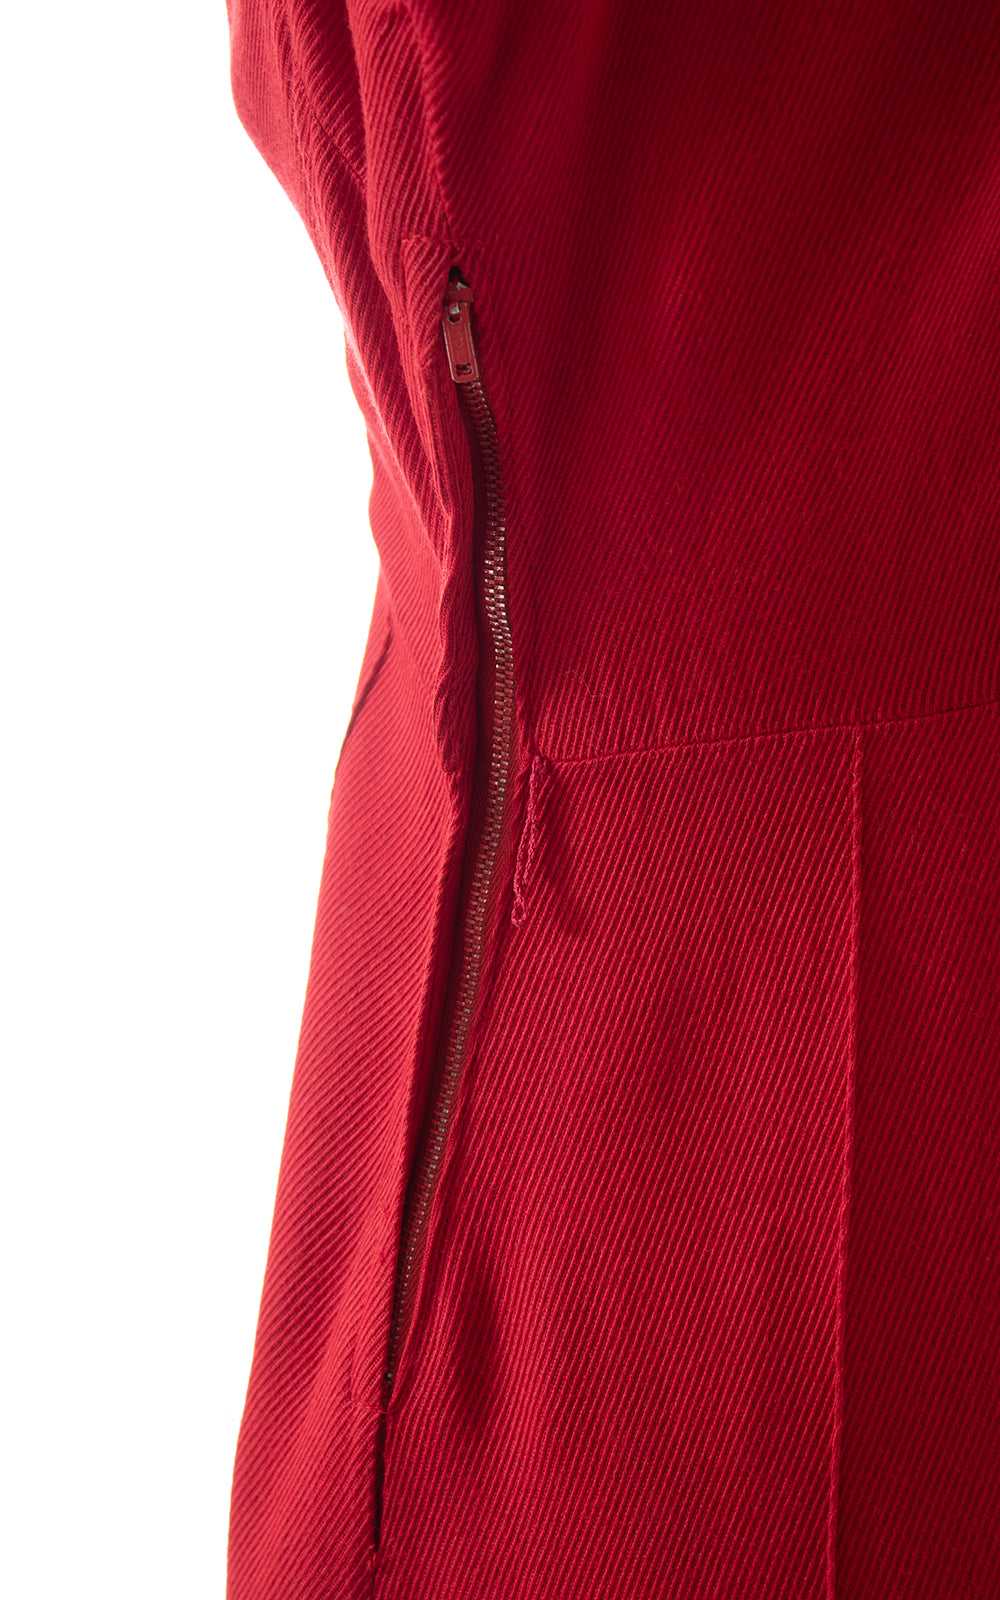 1960s Red Peter Pan Collar Shirt Dress | medium - image 8